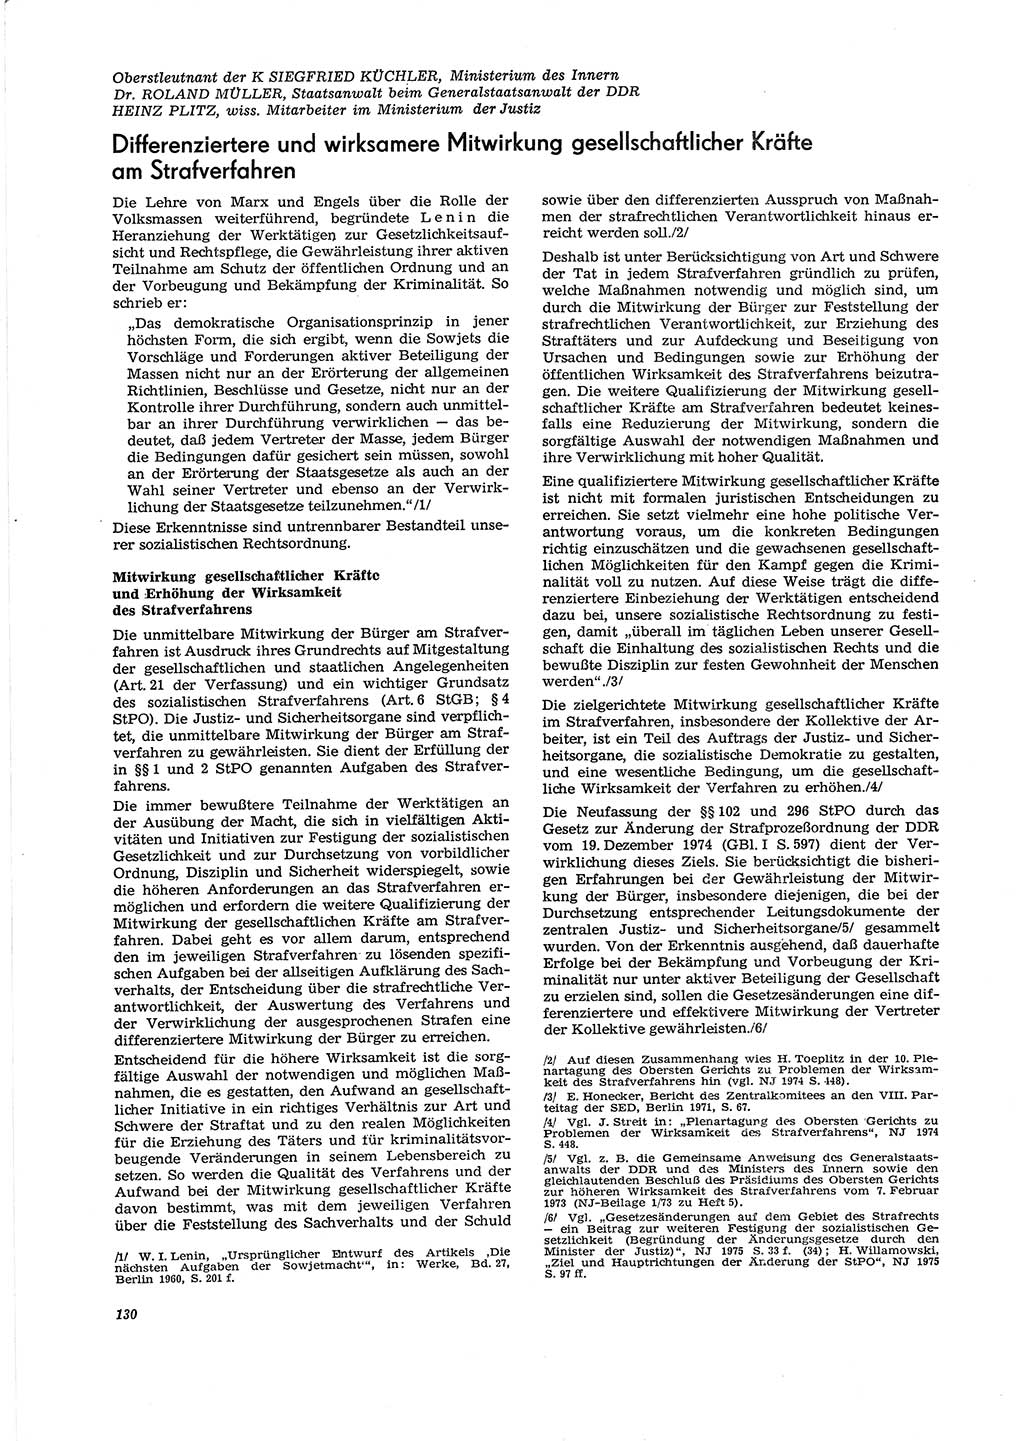 Neue Justiz (NJ), Zeitschrift für Recht und Rechtswissenschaft [Deutsche Demokratische Republik (DDR)], 29. Jahrgang 1975, Seite 130 (NJ DDR 1975, S. 130)